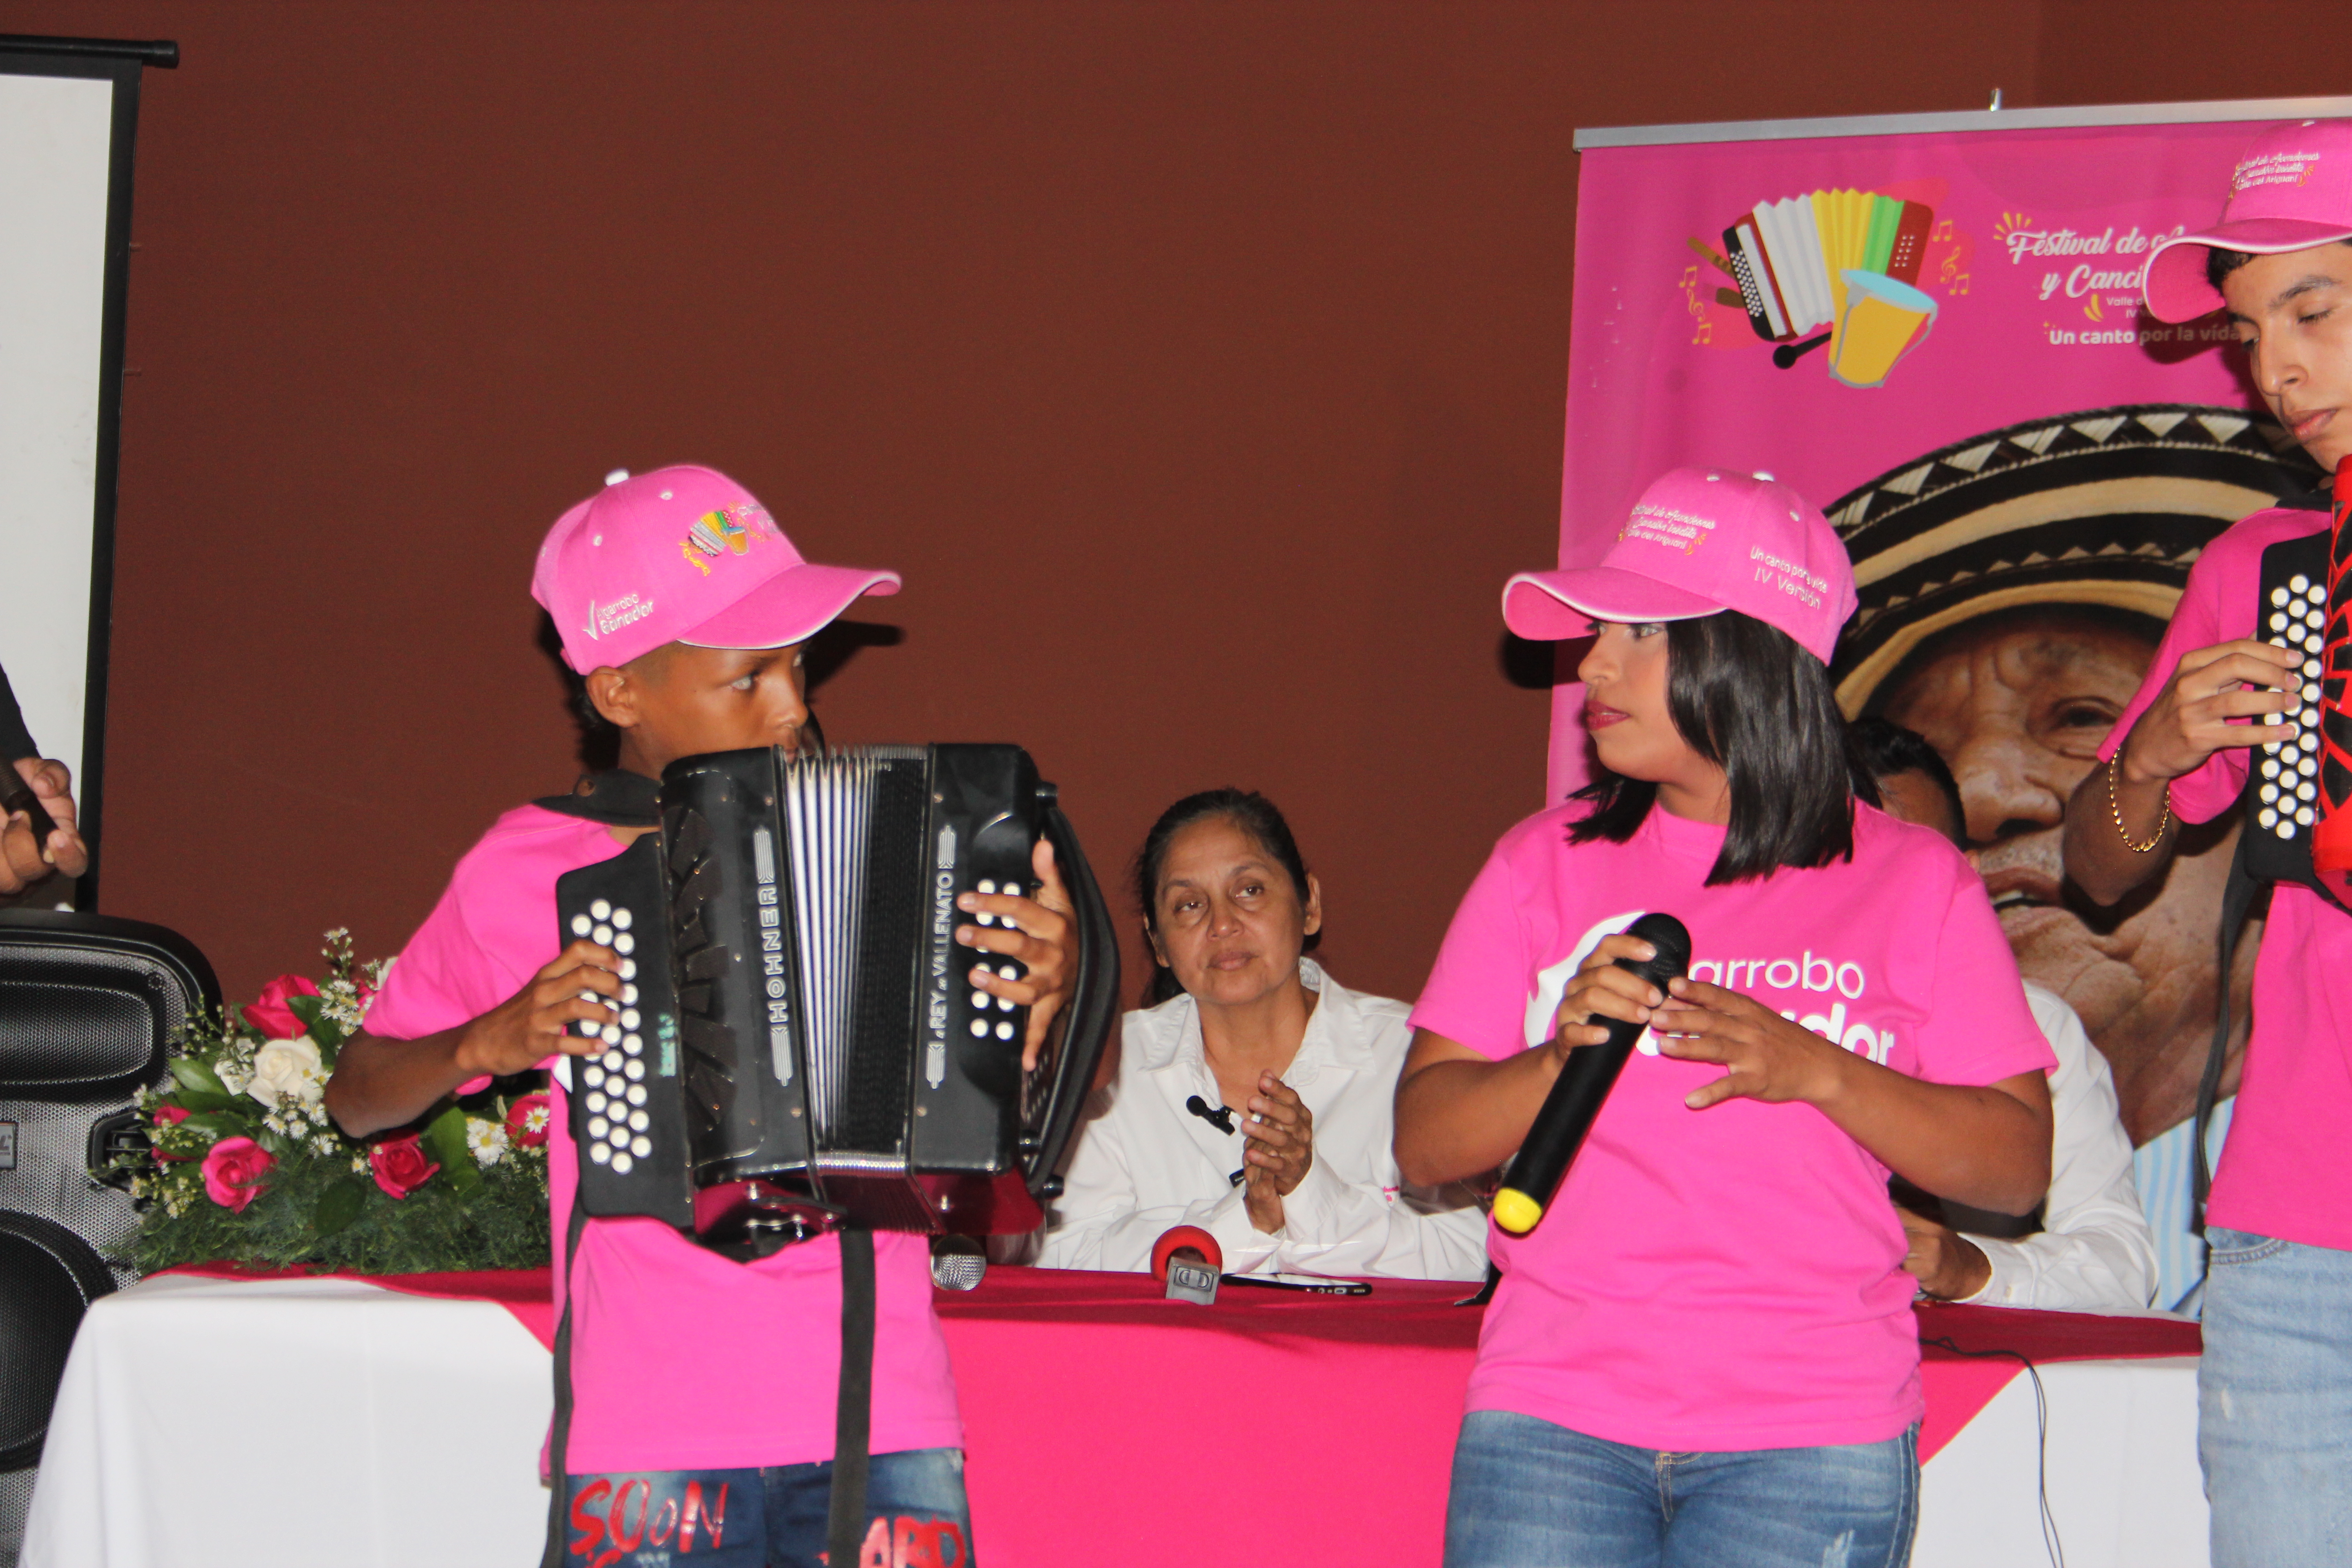 Gran acogida del pre-lanzamiento al Festival de Acordeones y Canción Inédita “Valle del ariguani” de Algarrobo, Magdalena